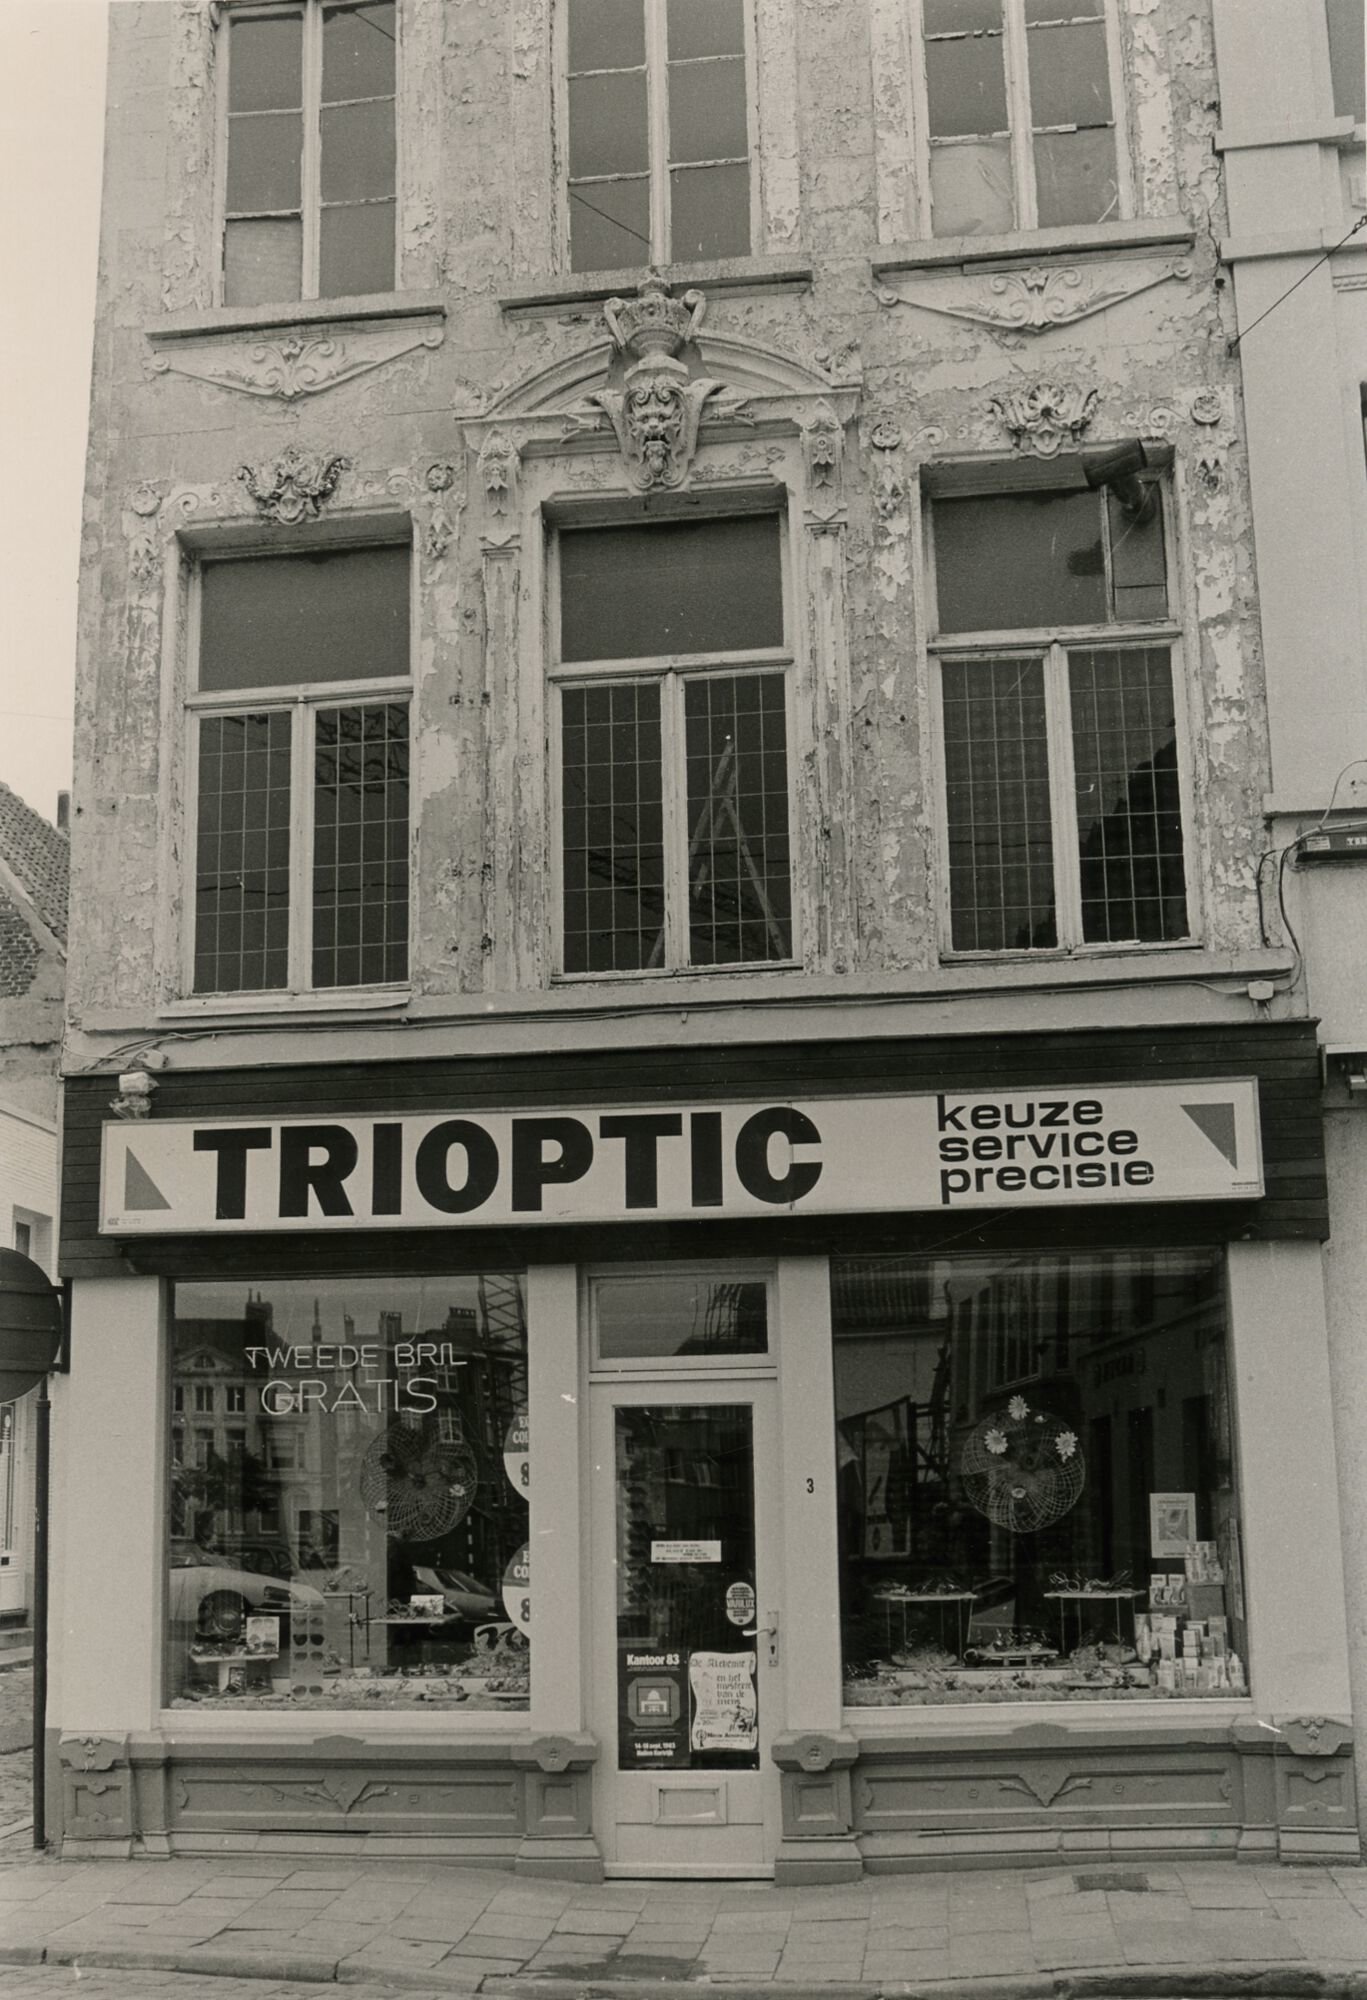 Gevel van optiek Trioptic in Gent